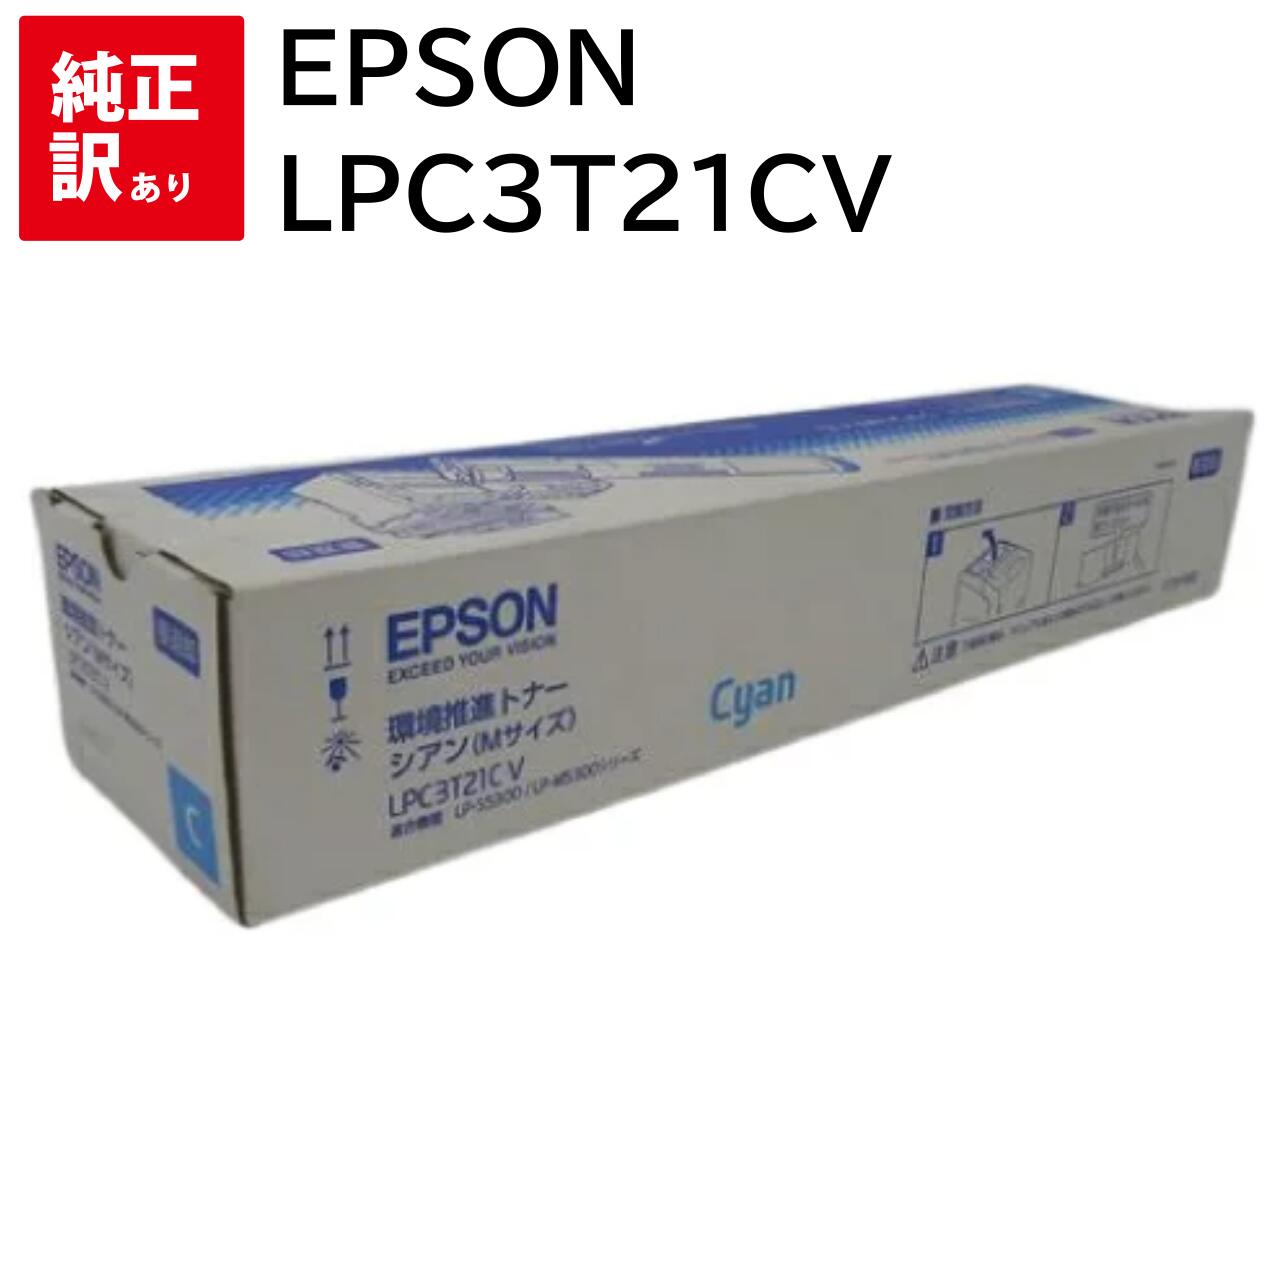 2021人気特価 訳あり 新品 EPSON LPC3T21CV シアン エプソン 環境推進